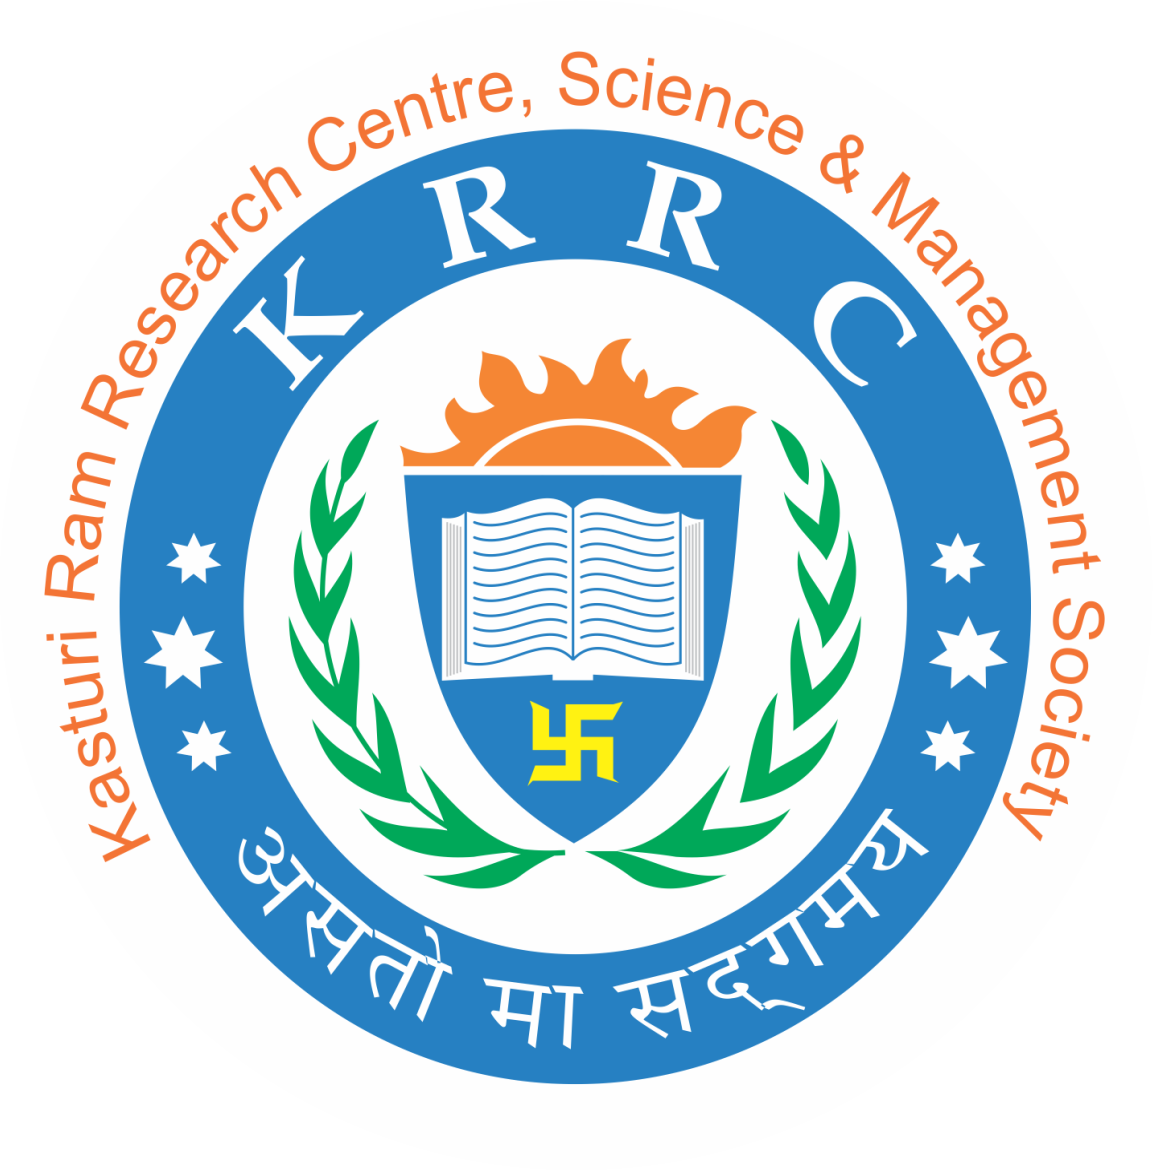 Kasturi Ram College of Higher Education Jobs 2019 - Apply Online for Assistant Professor/ Associate Professor/ Professor/ Director Posts